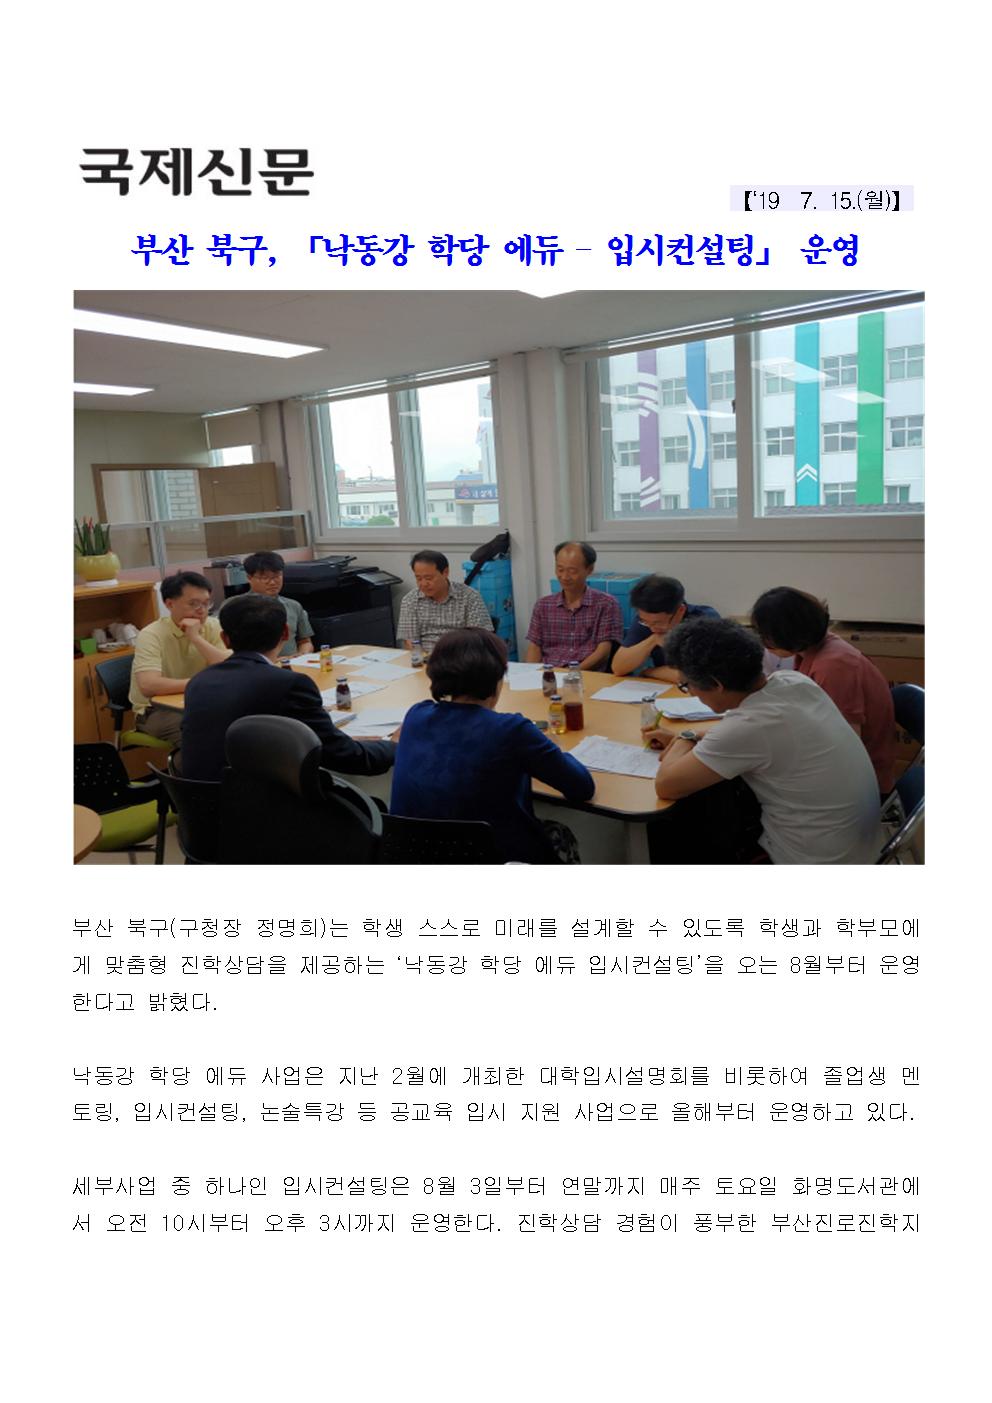 부산 북구「낙동강 학당 에듀 입시컨설팅」 운영(3-1-9)